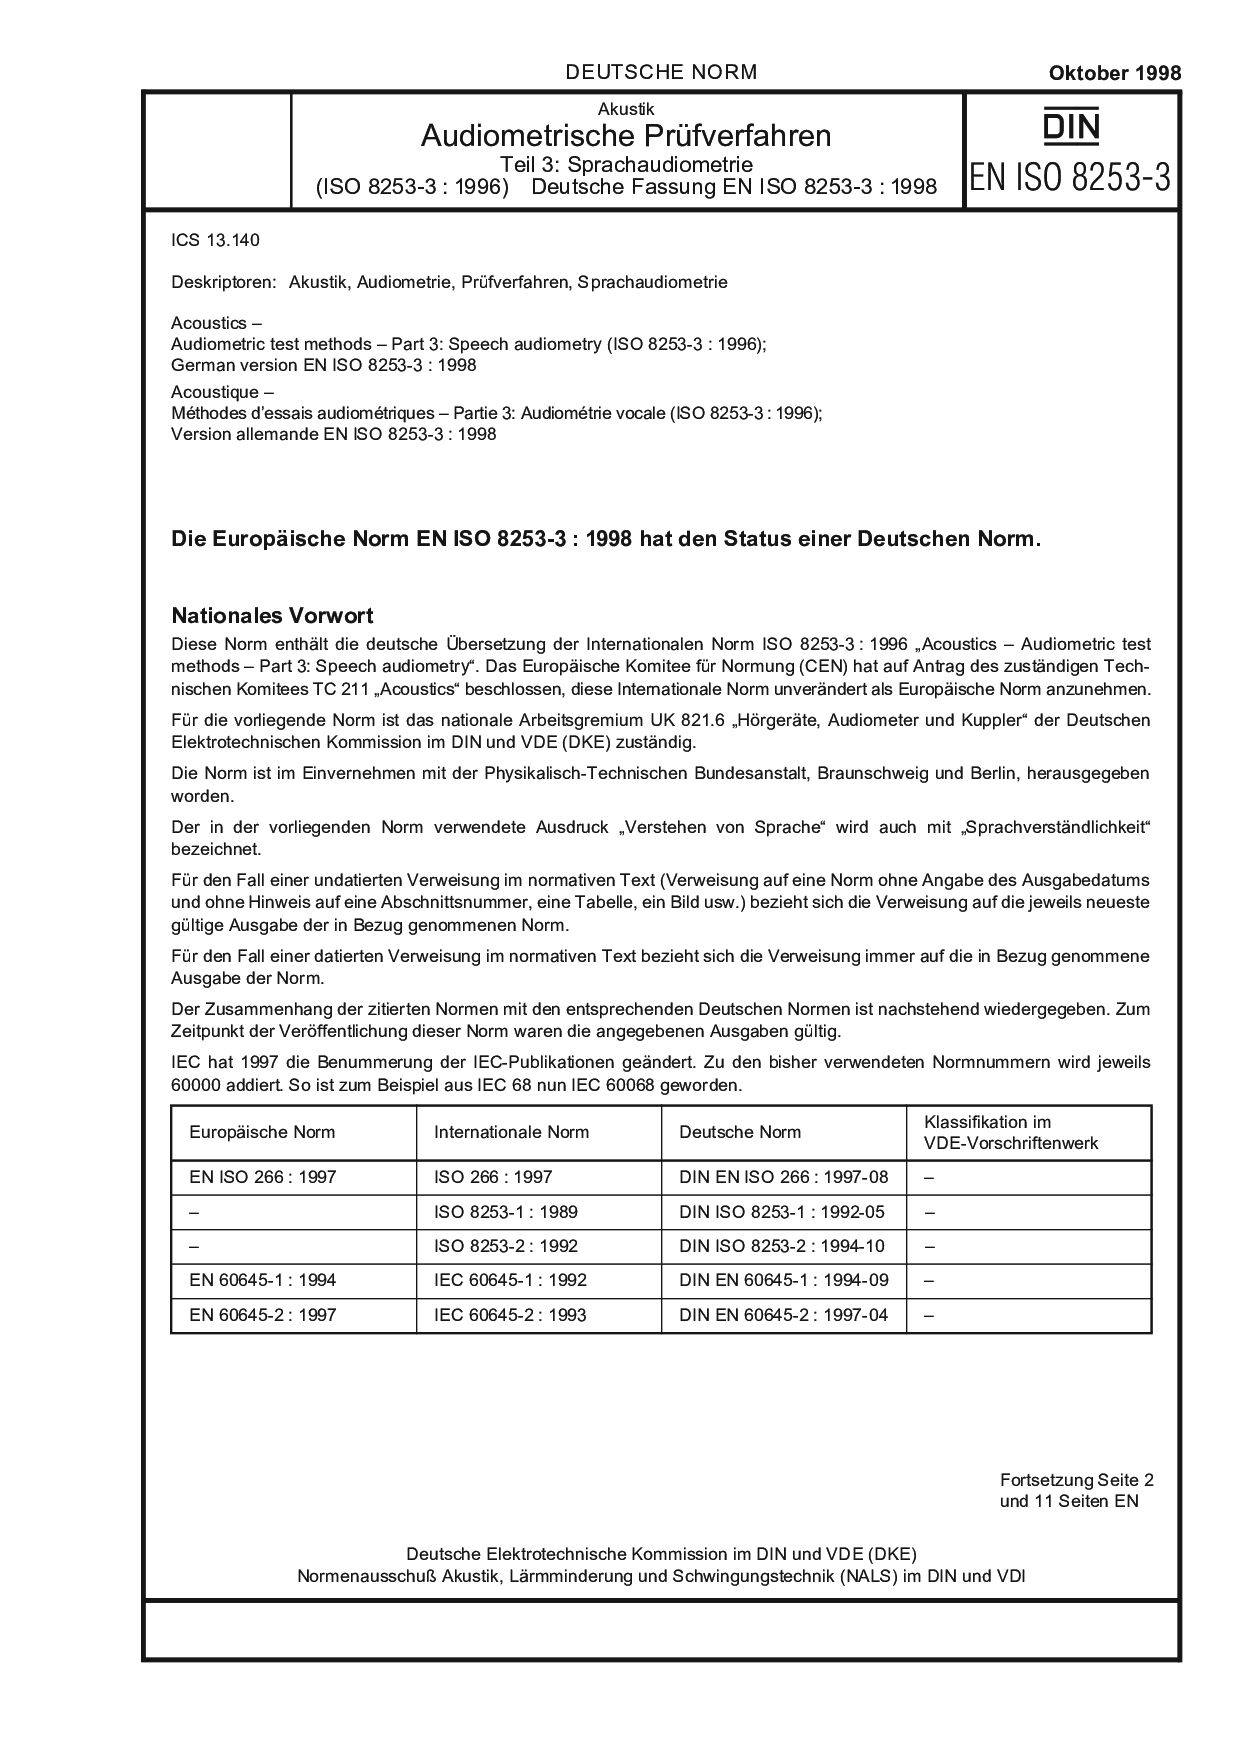 DIN EN ISO 8253-3:1998